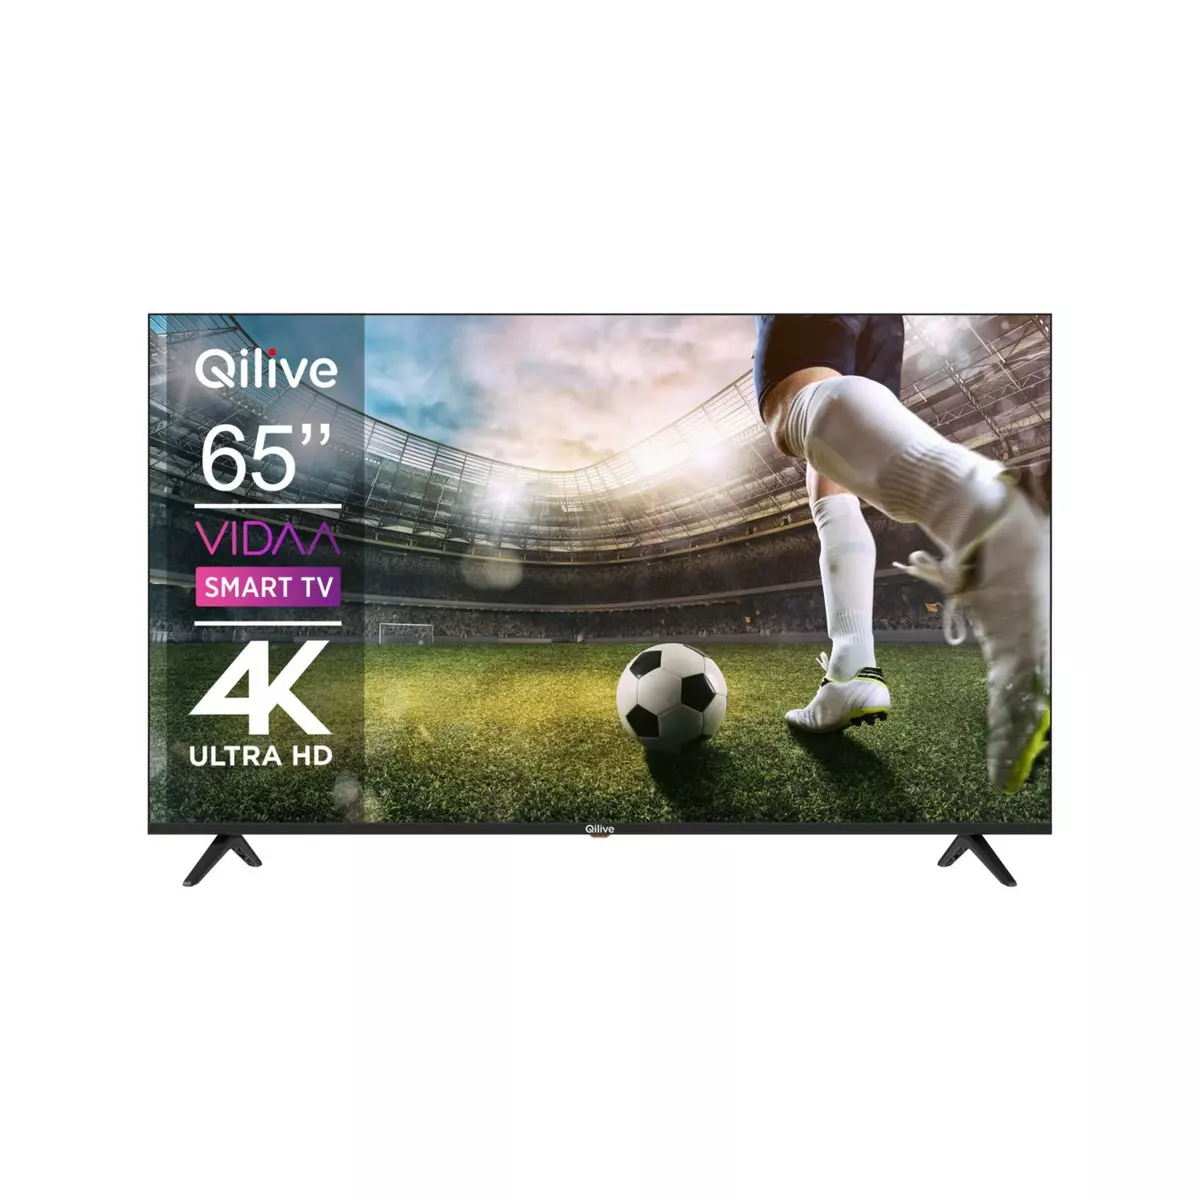 QILIVE Q65US241B TV DLED UHD 164 cm Smart TV